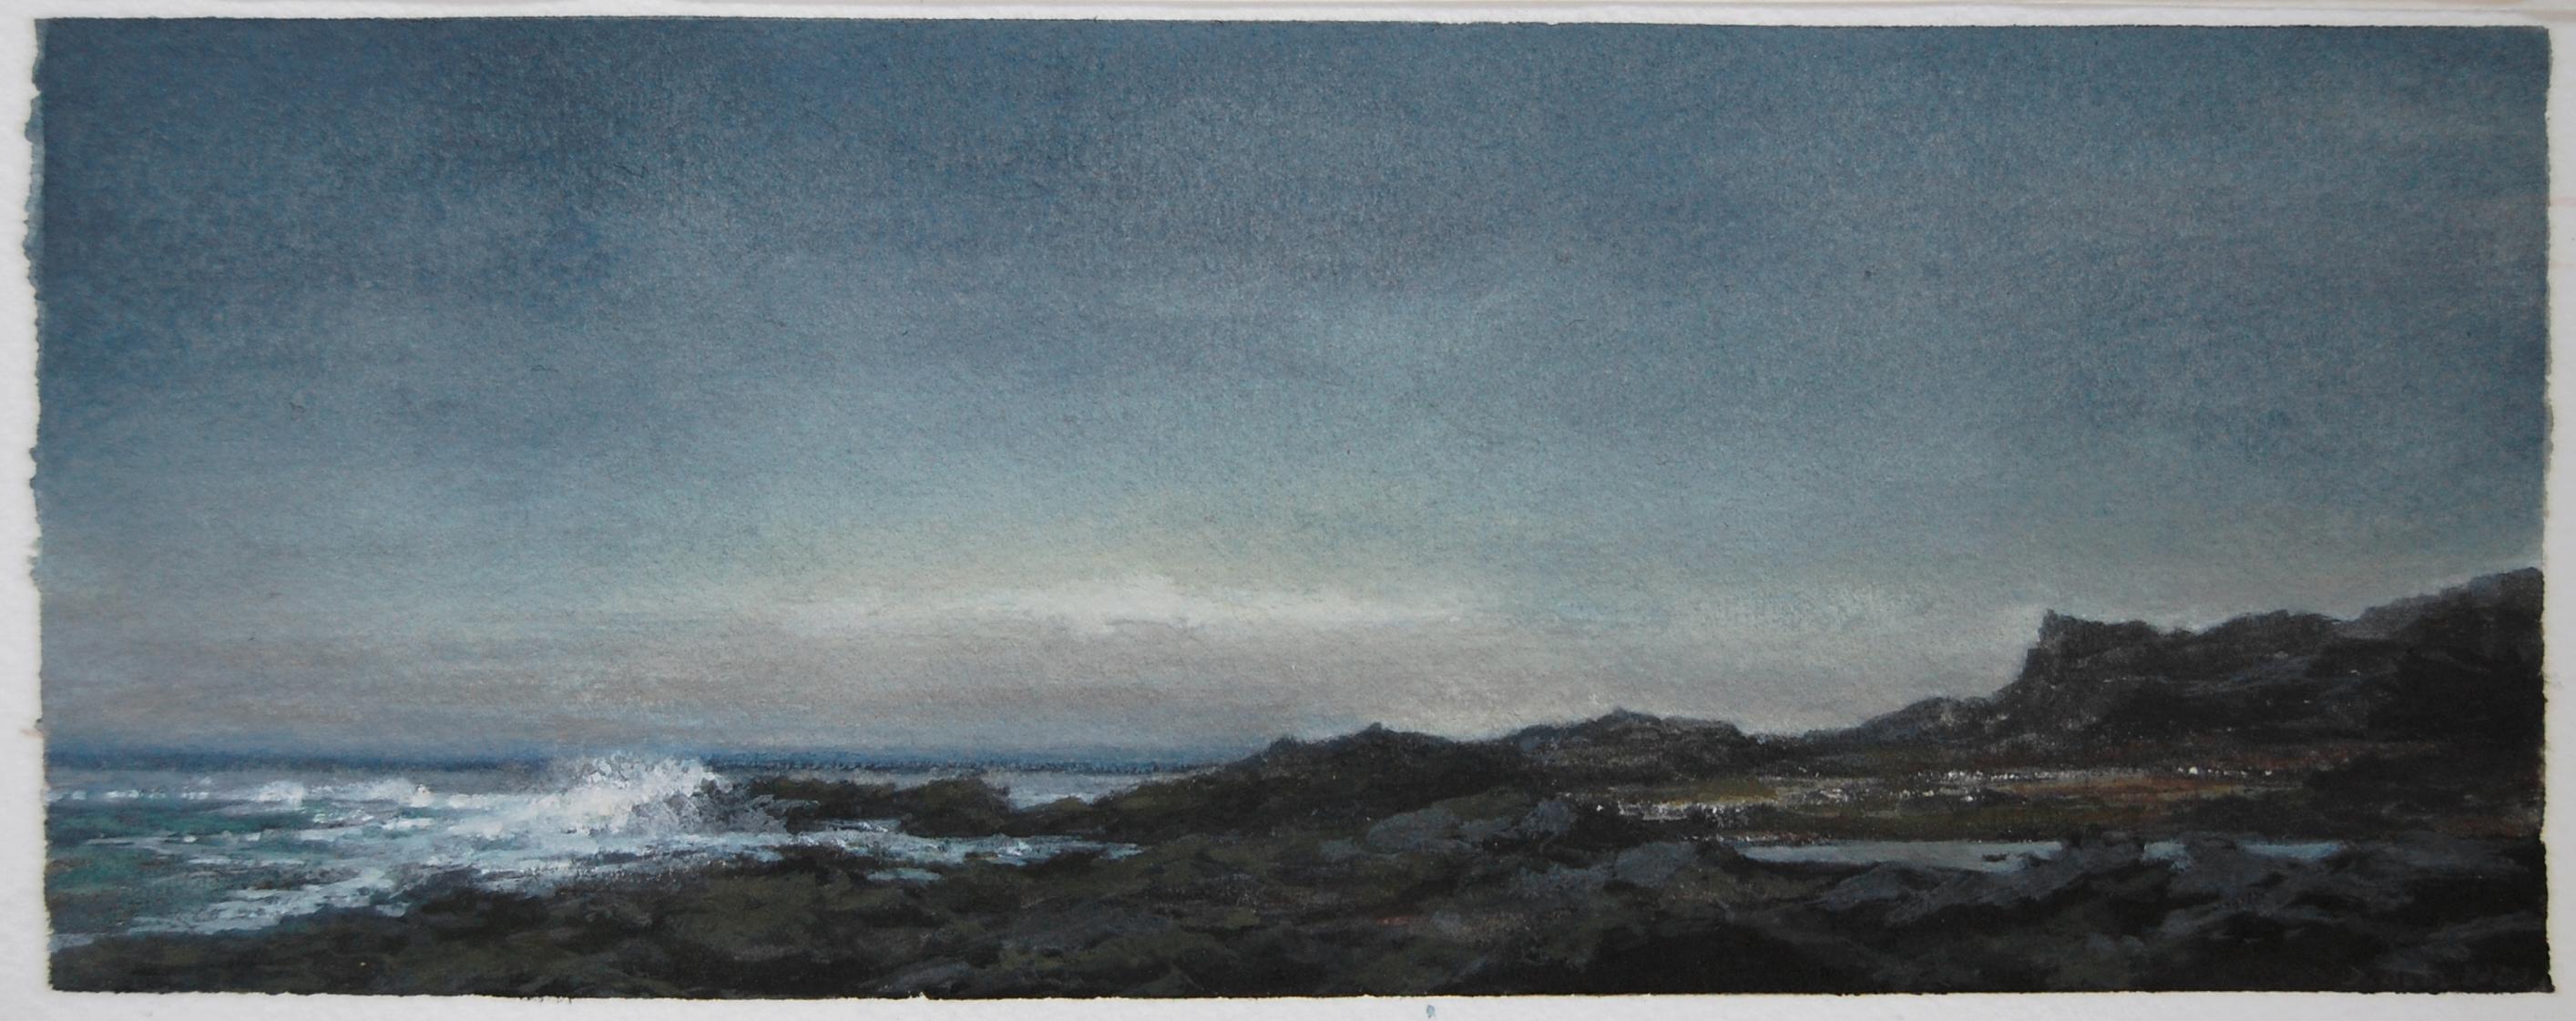 Landscape Art Dozier Bell - SHORE, vers le crépuscule, paysage marin du nord-est, aquarelle